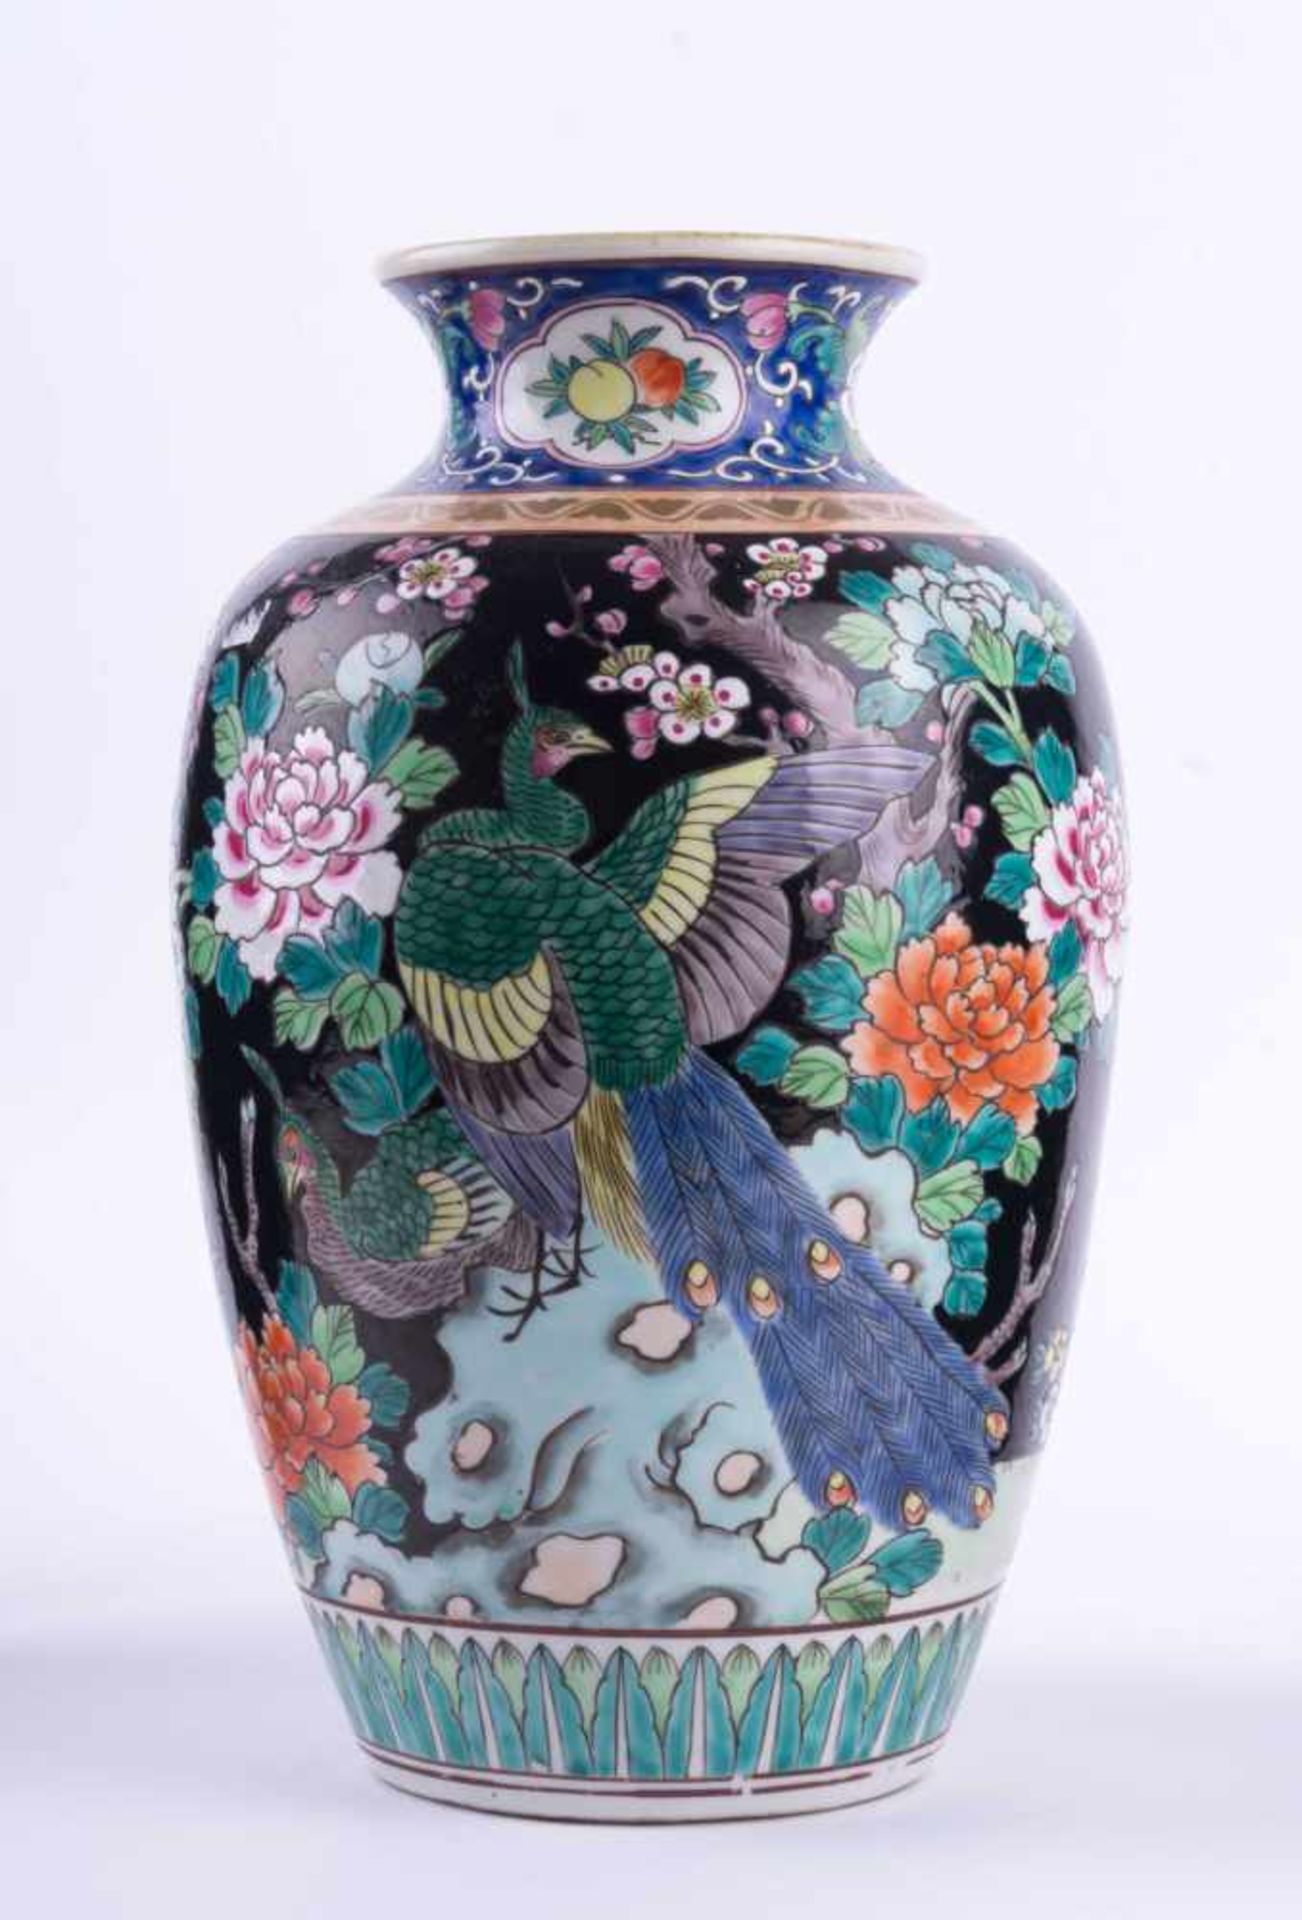 Vase China Famille Verte 19. Jhd. Emaille-Malerei mit Pfauen- und floralem Dekor, unterm Stand